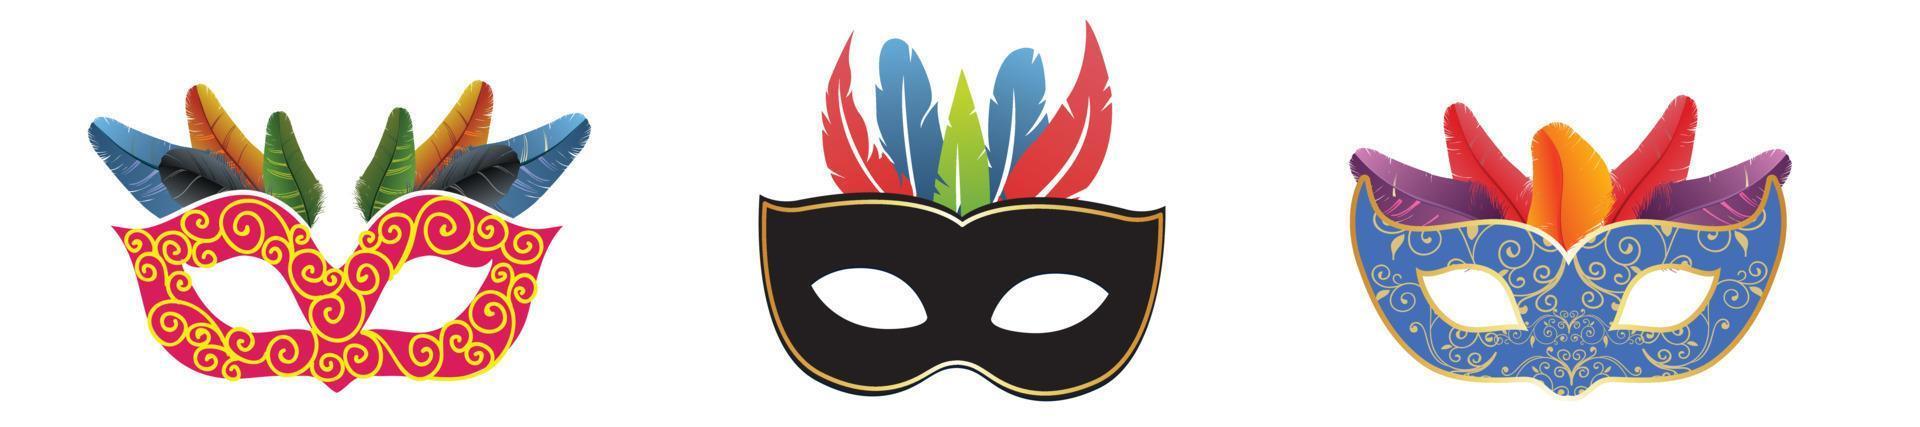 concetto festivo di carnevale felice con la maschera della tromba musicale. maschera di carnevale. illustrazione vettoriale